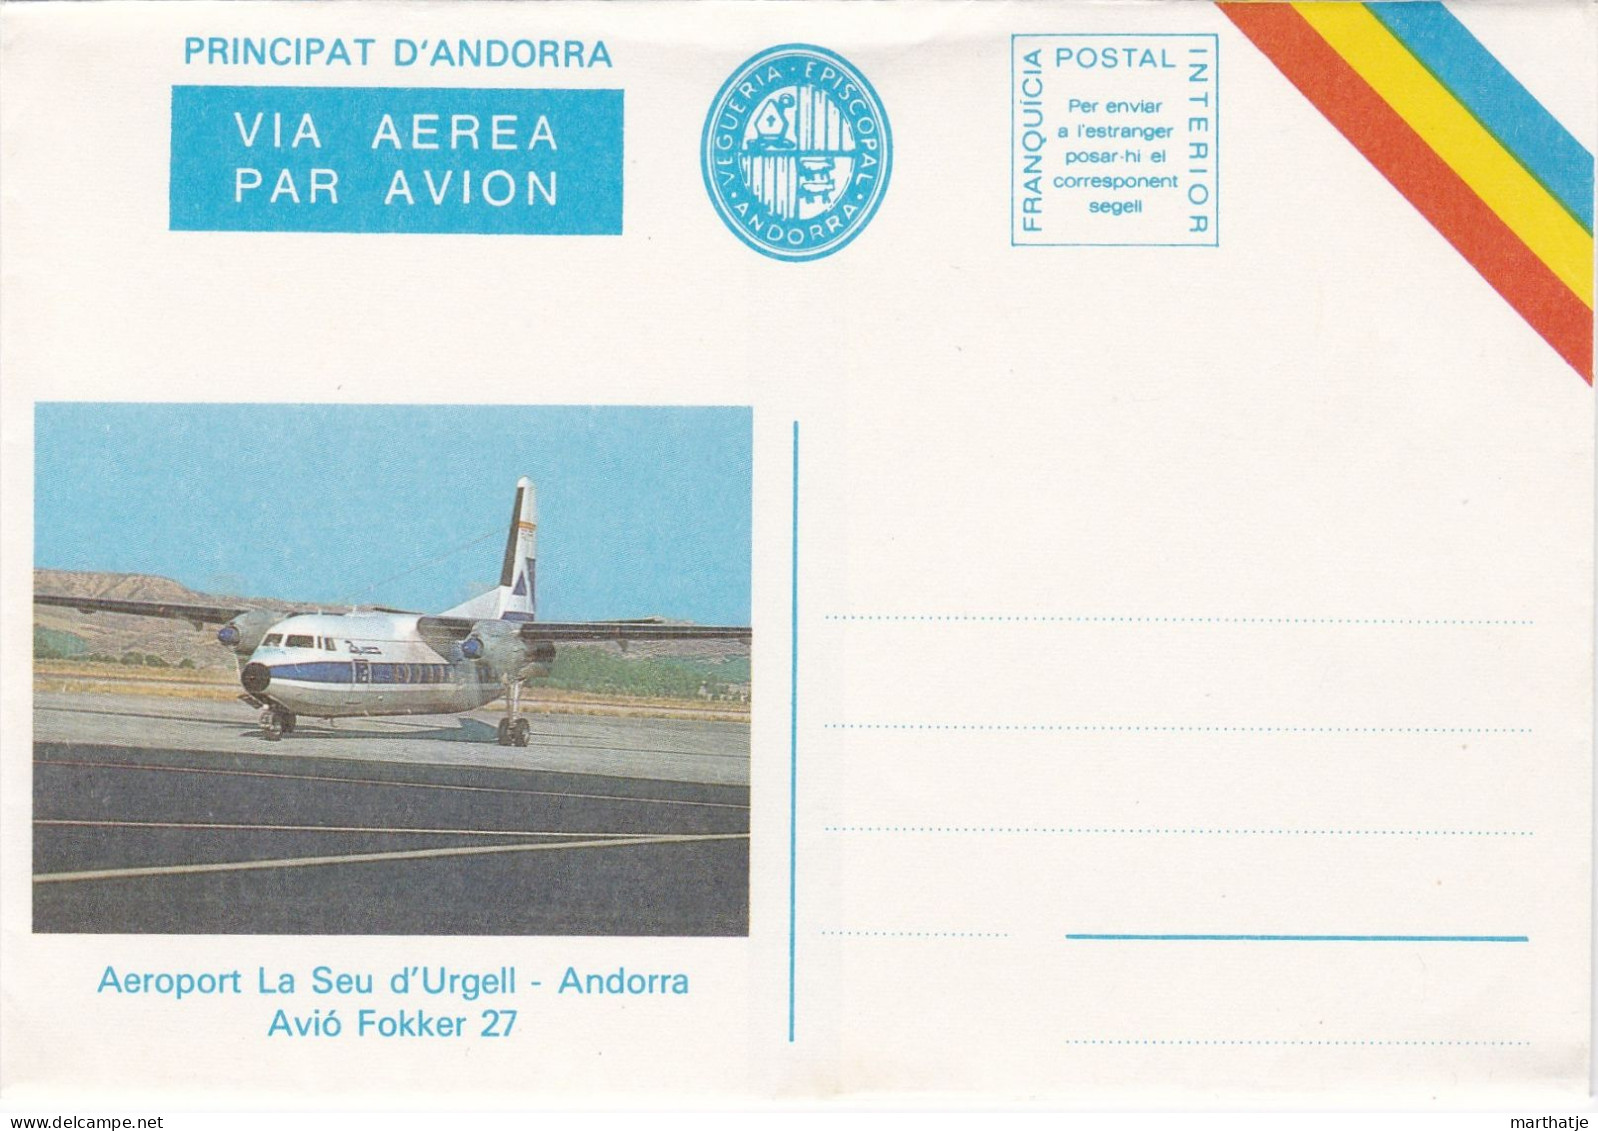 Principat D'Andorra -  Via Aerea Par Avion - Vegueria Episcopal - Aeroport La Seu D'Urgell - Avio Fokker 27 - Andorra - Vegueria Episcopal